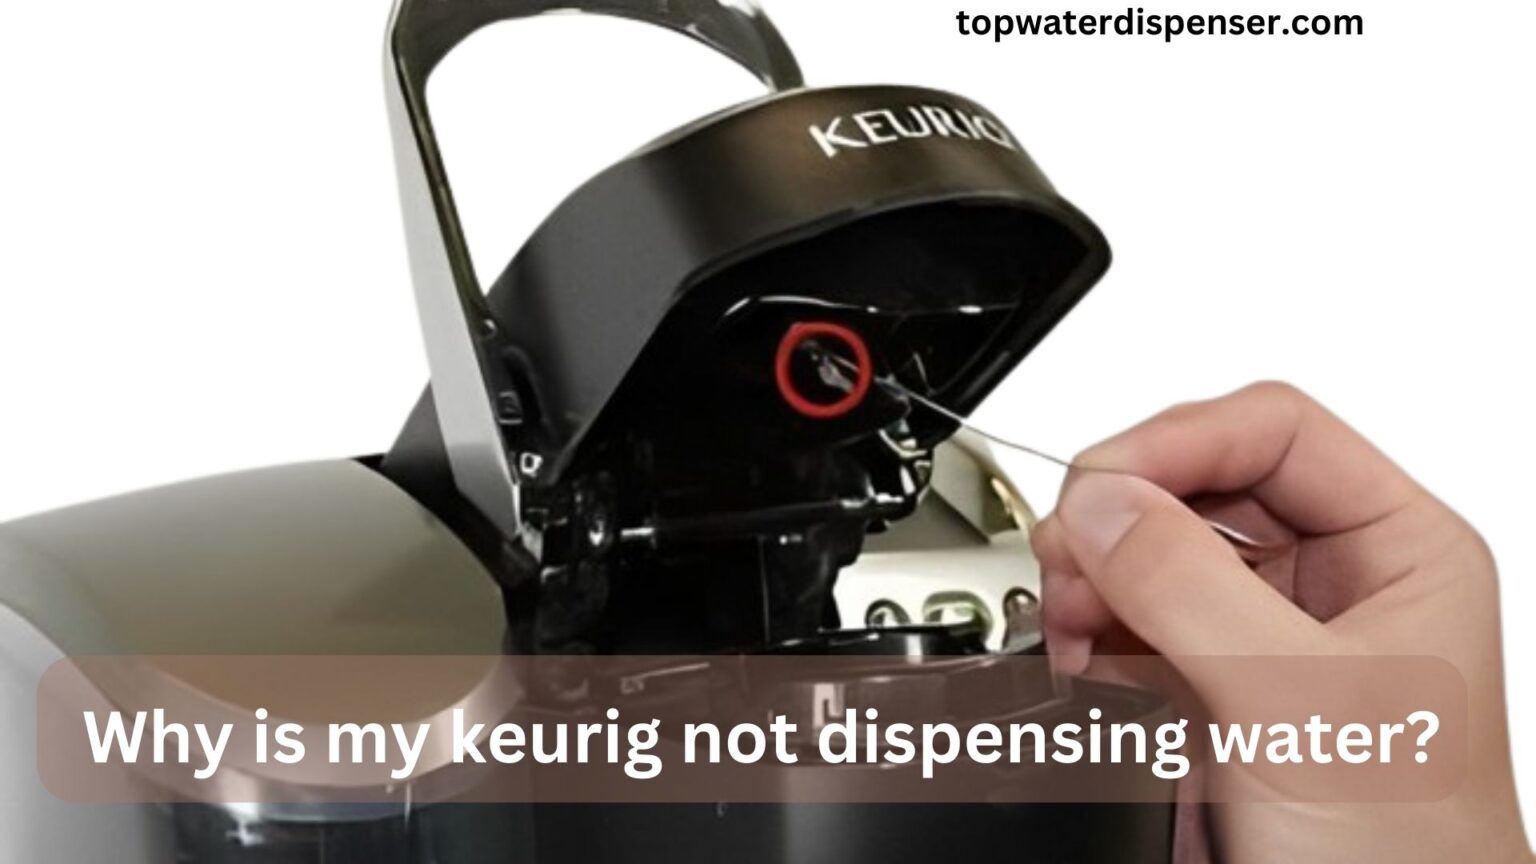 Why is my keurig not dispensing water?